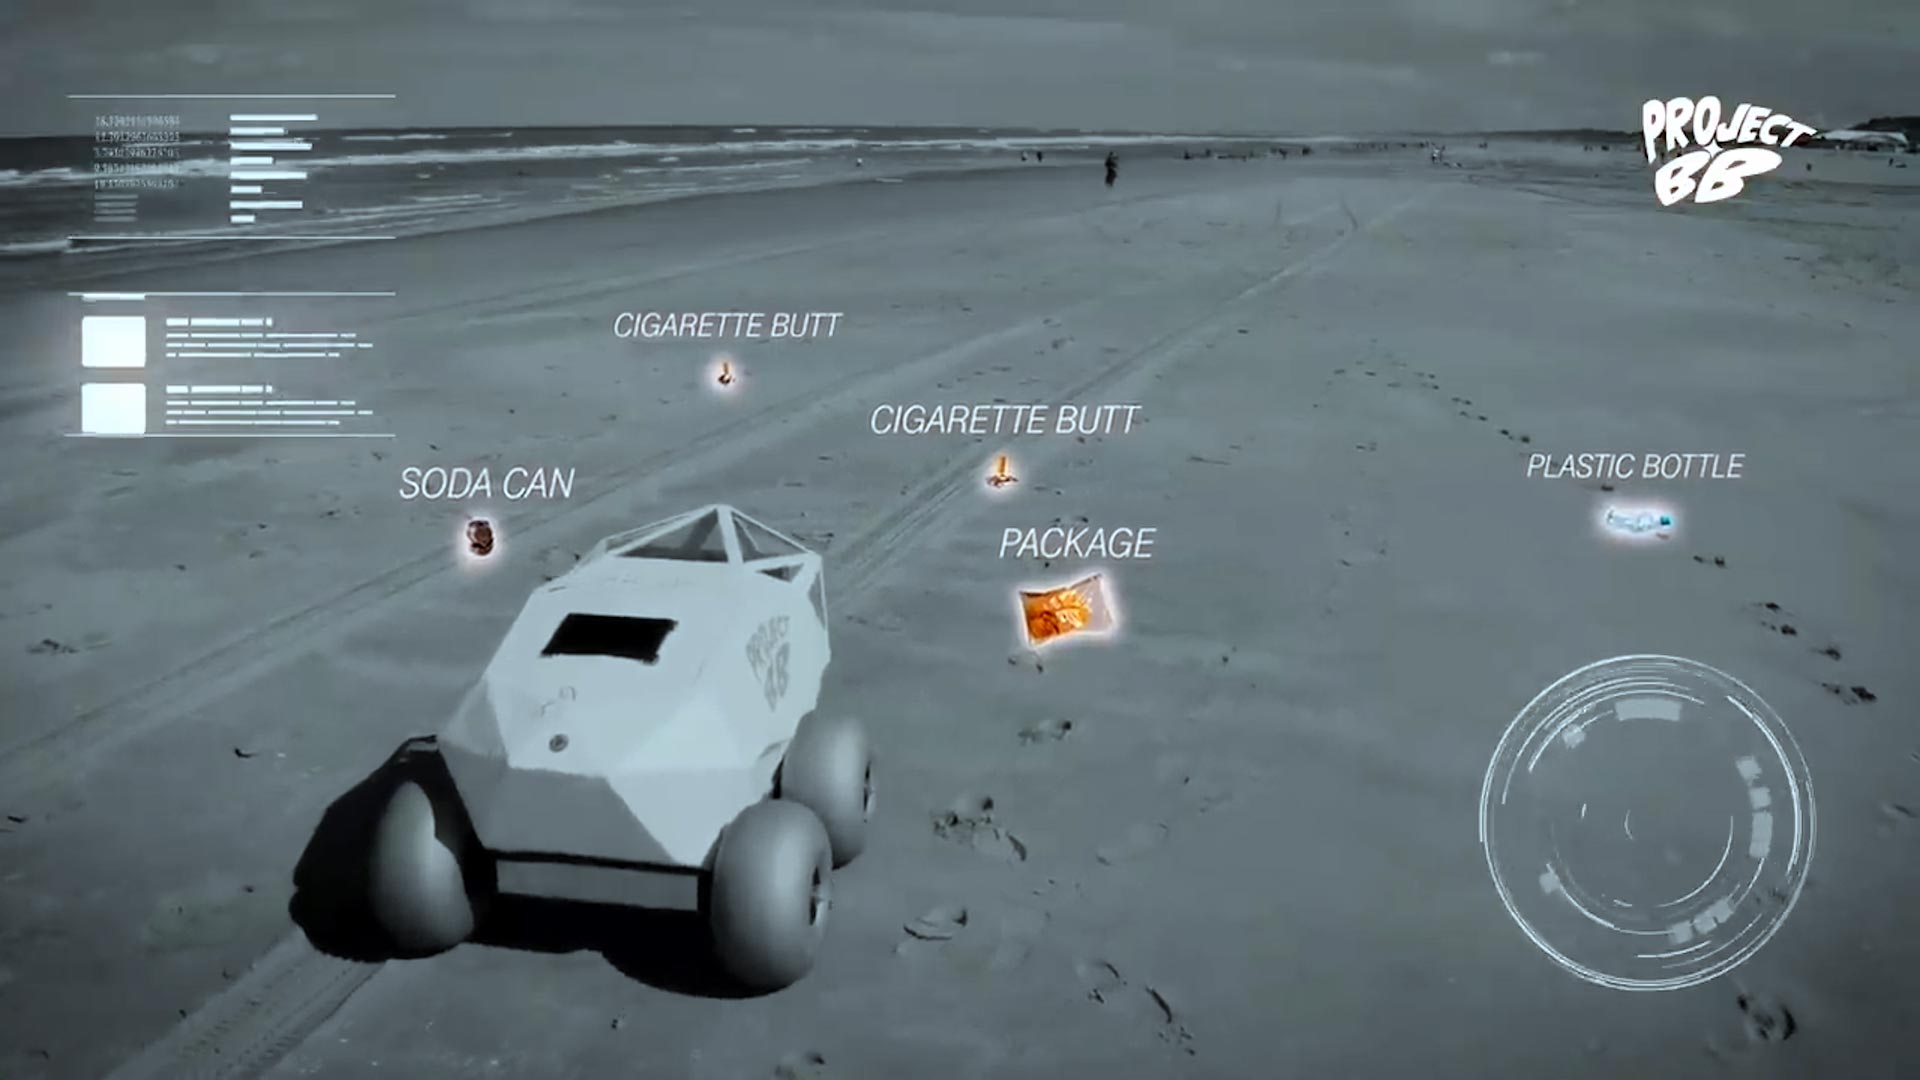 El prototipo de BeachBot usa IA para aprender cómo encontrar mejor los filtros esparcidos, incluso si están parcialmente enterrados en la arena. (Microsoft)